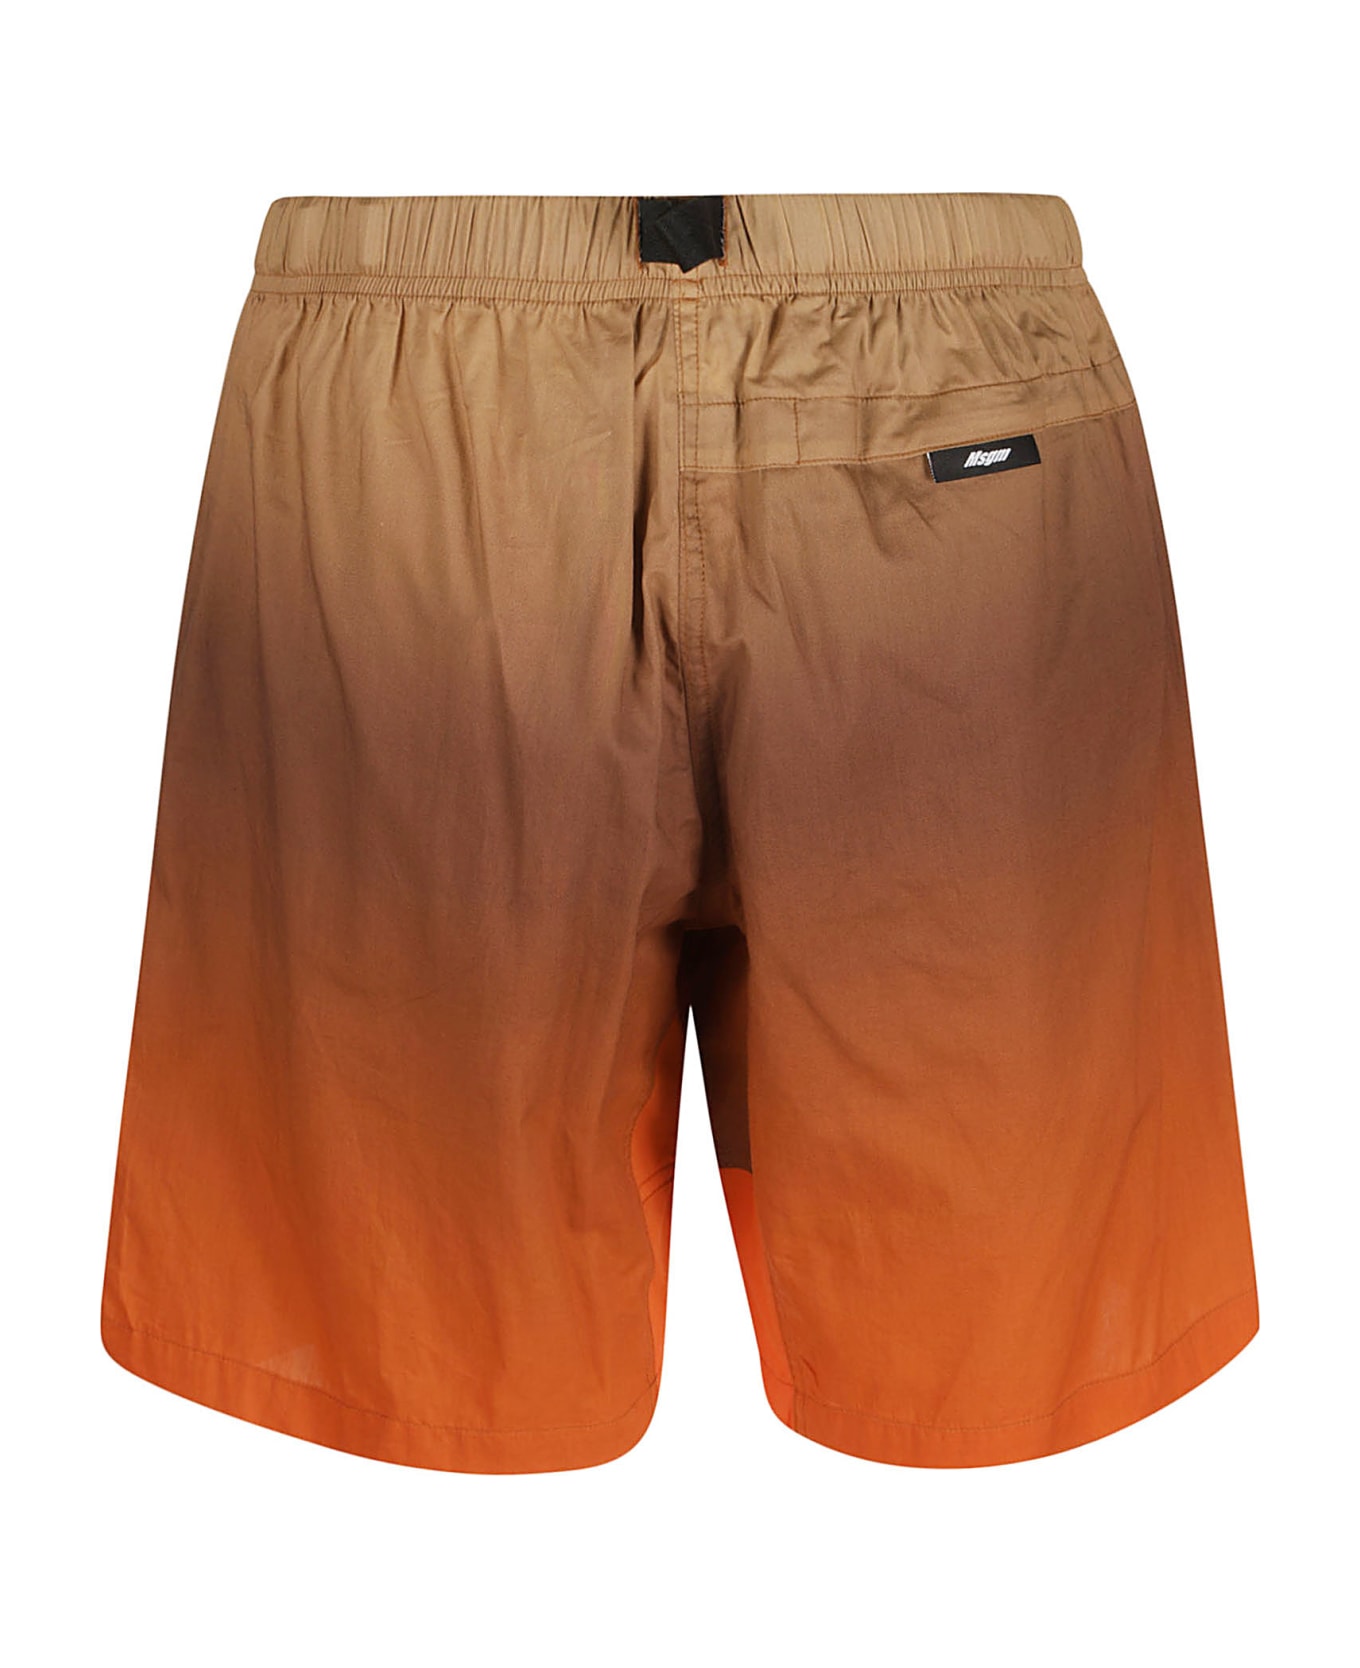 MSGM Strapped Shorts - Beige/Orange ショートパンツ